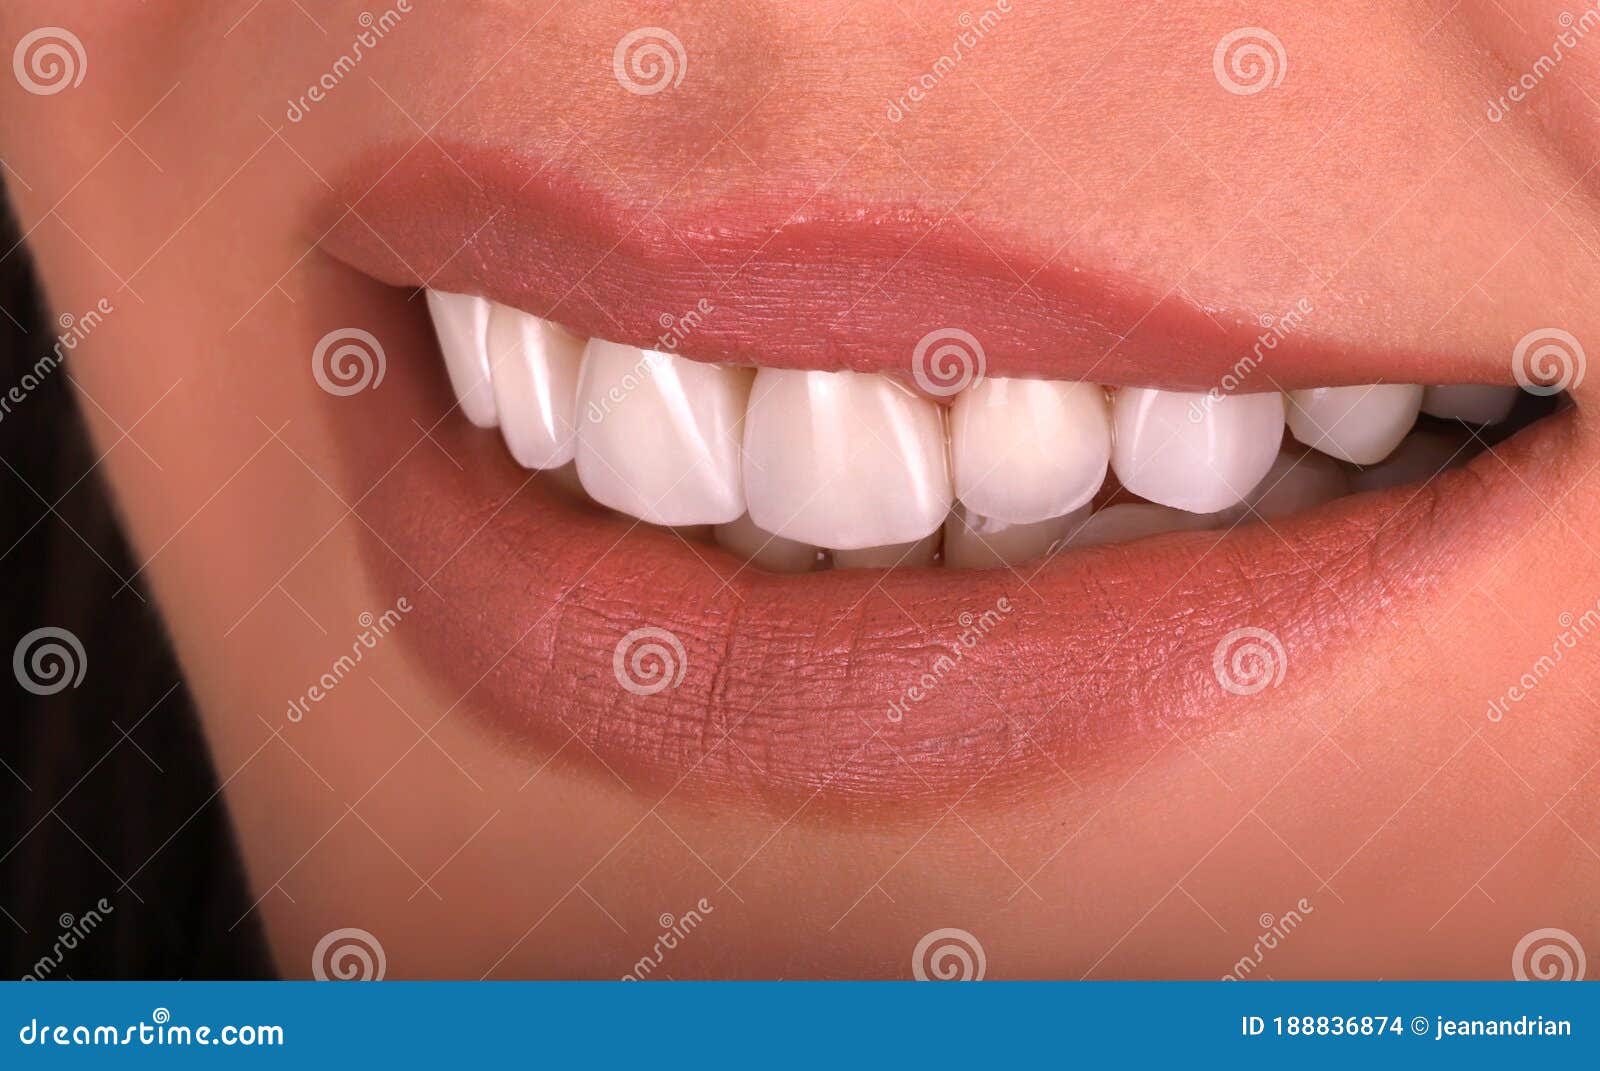 美女牙齿图片大全-美女牙齿高清图片下载-觅知网